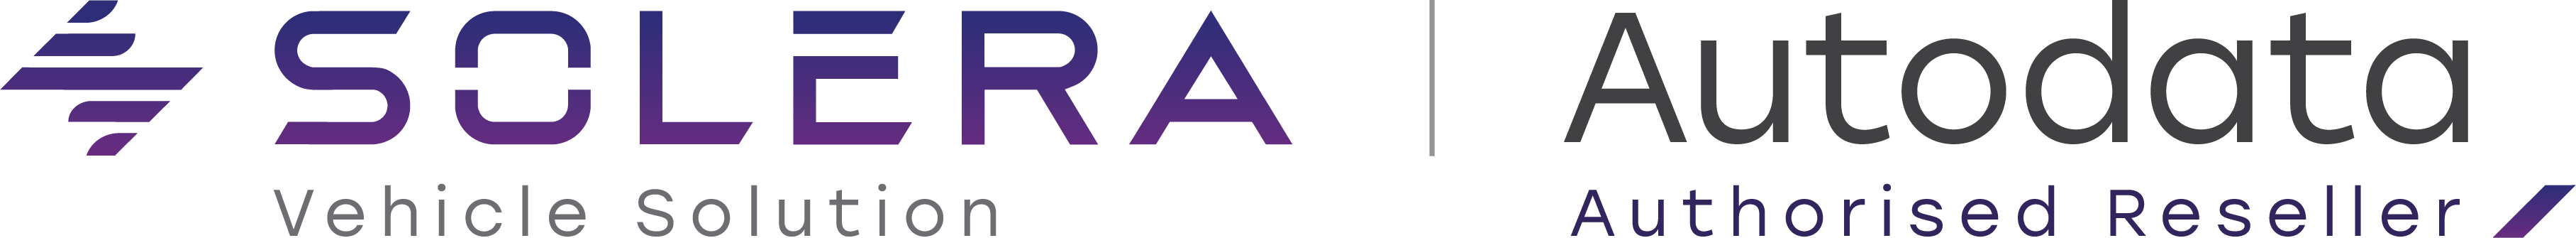 Logotip-Autodata-in-Solera